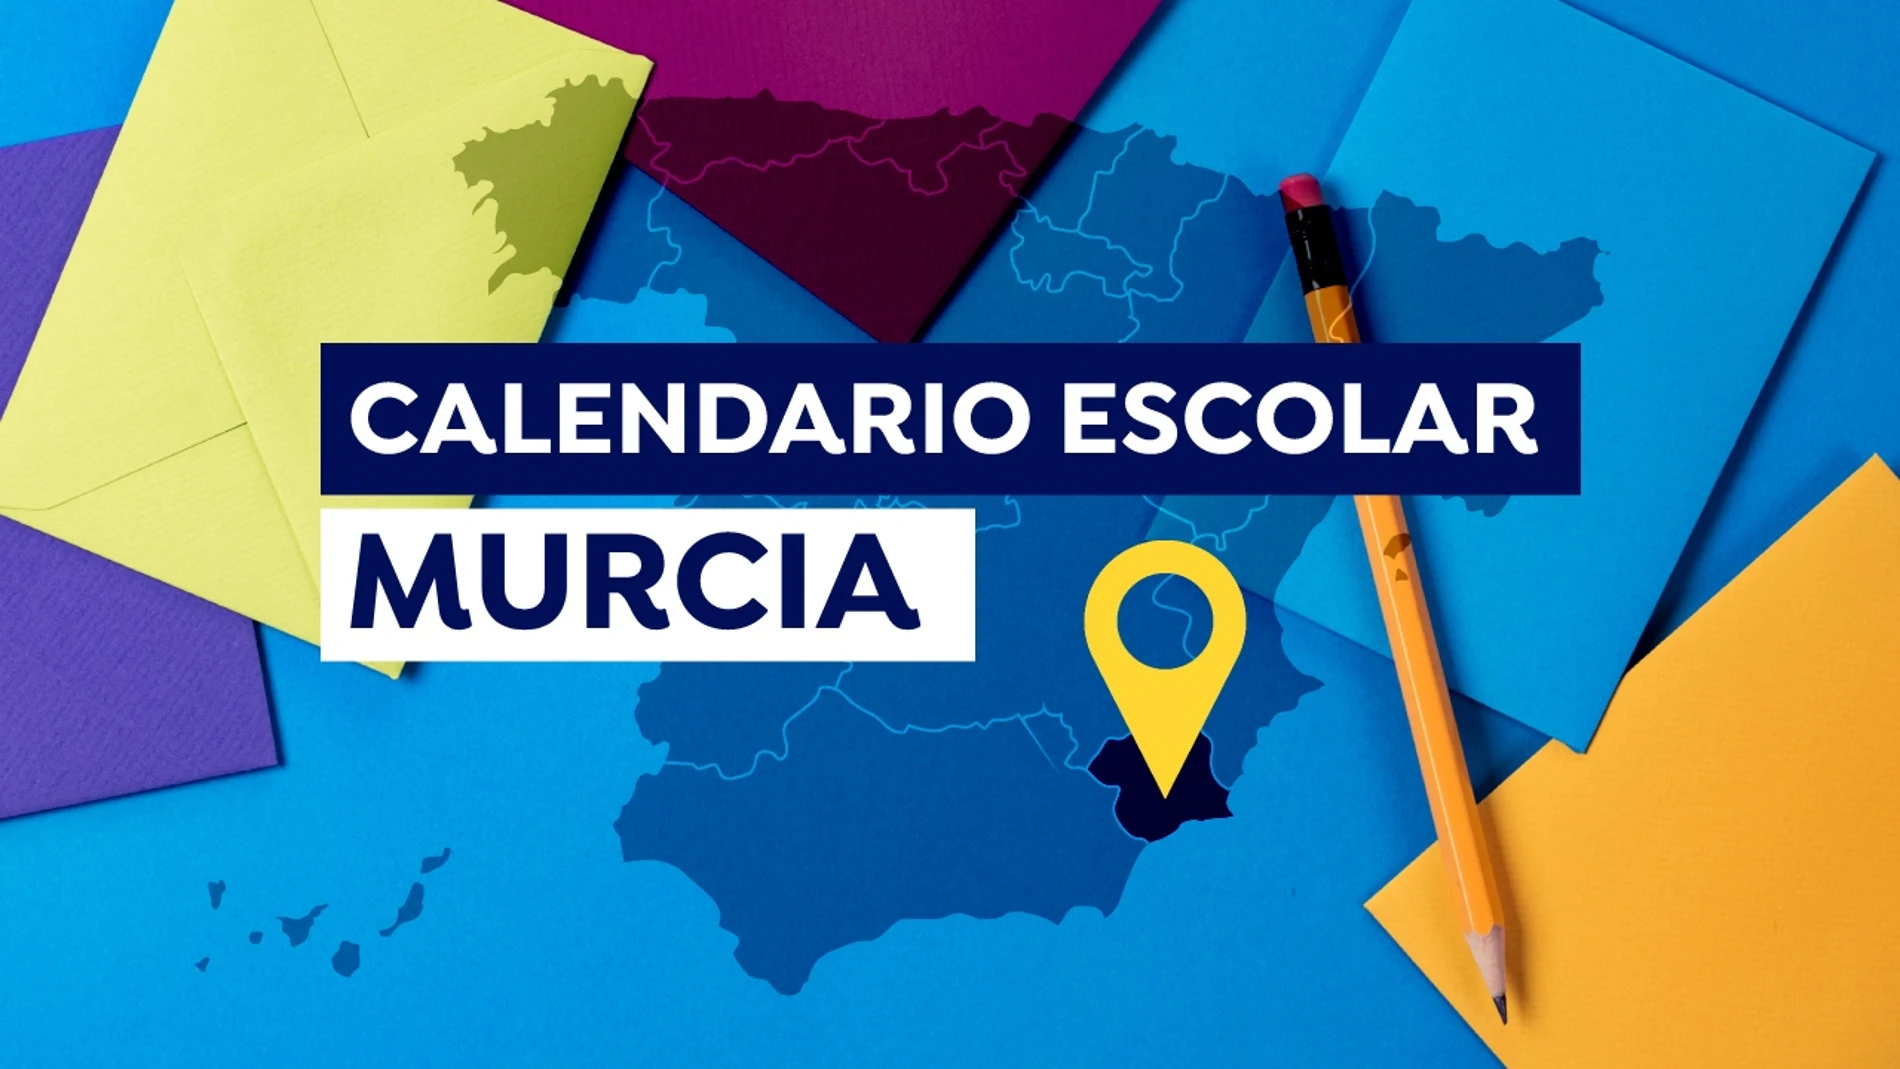 Calendario escolar en Murcia 2021-2022